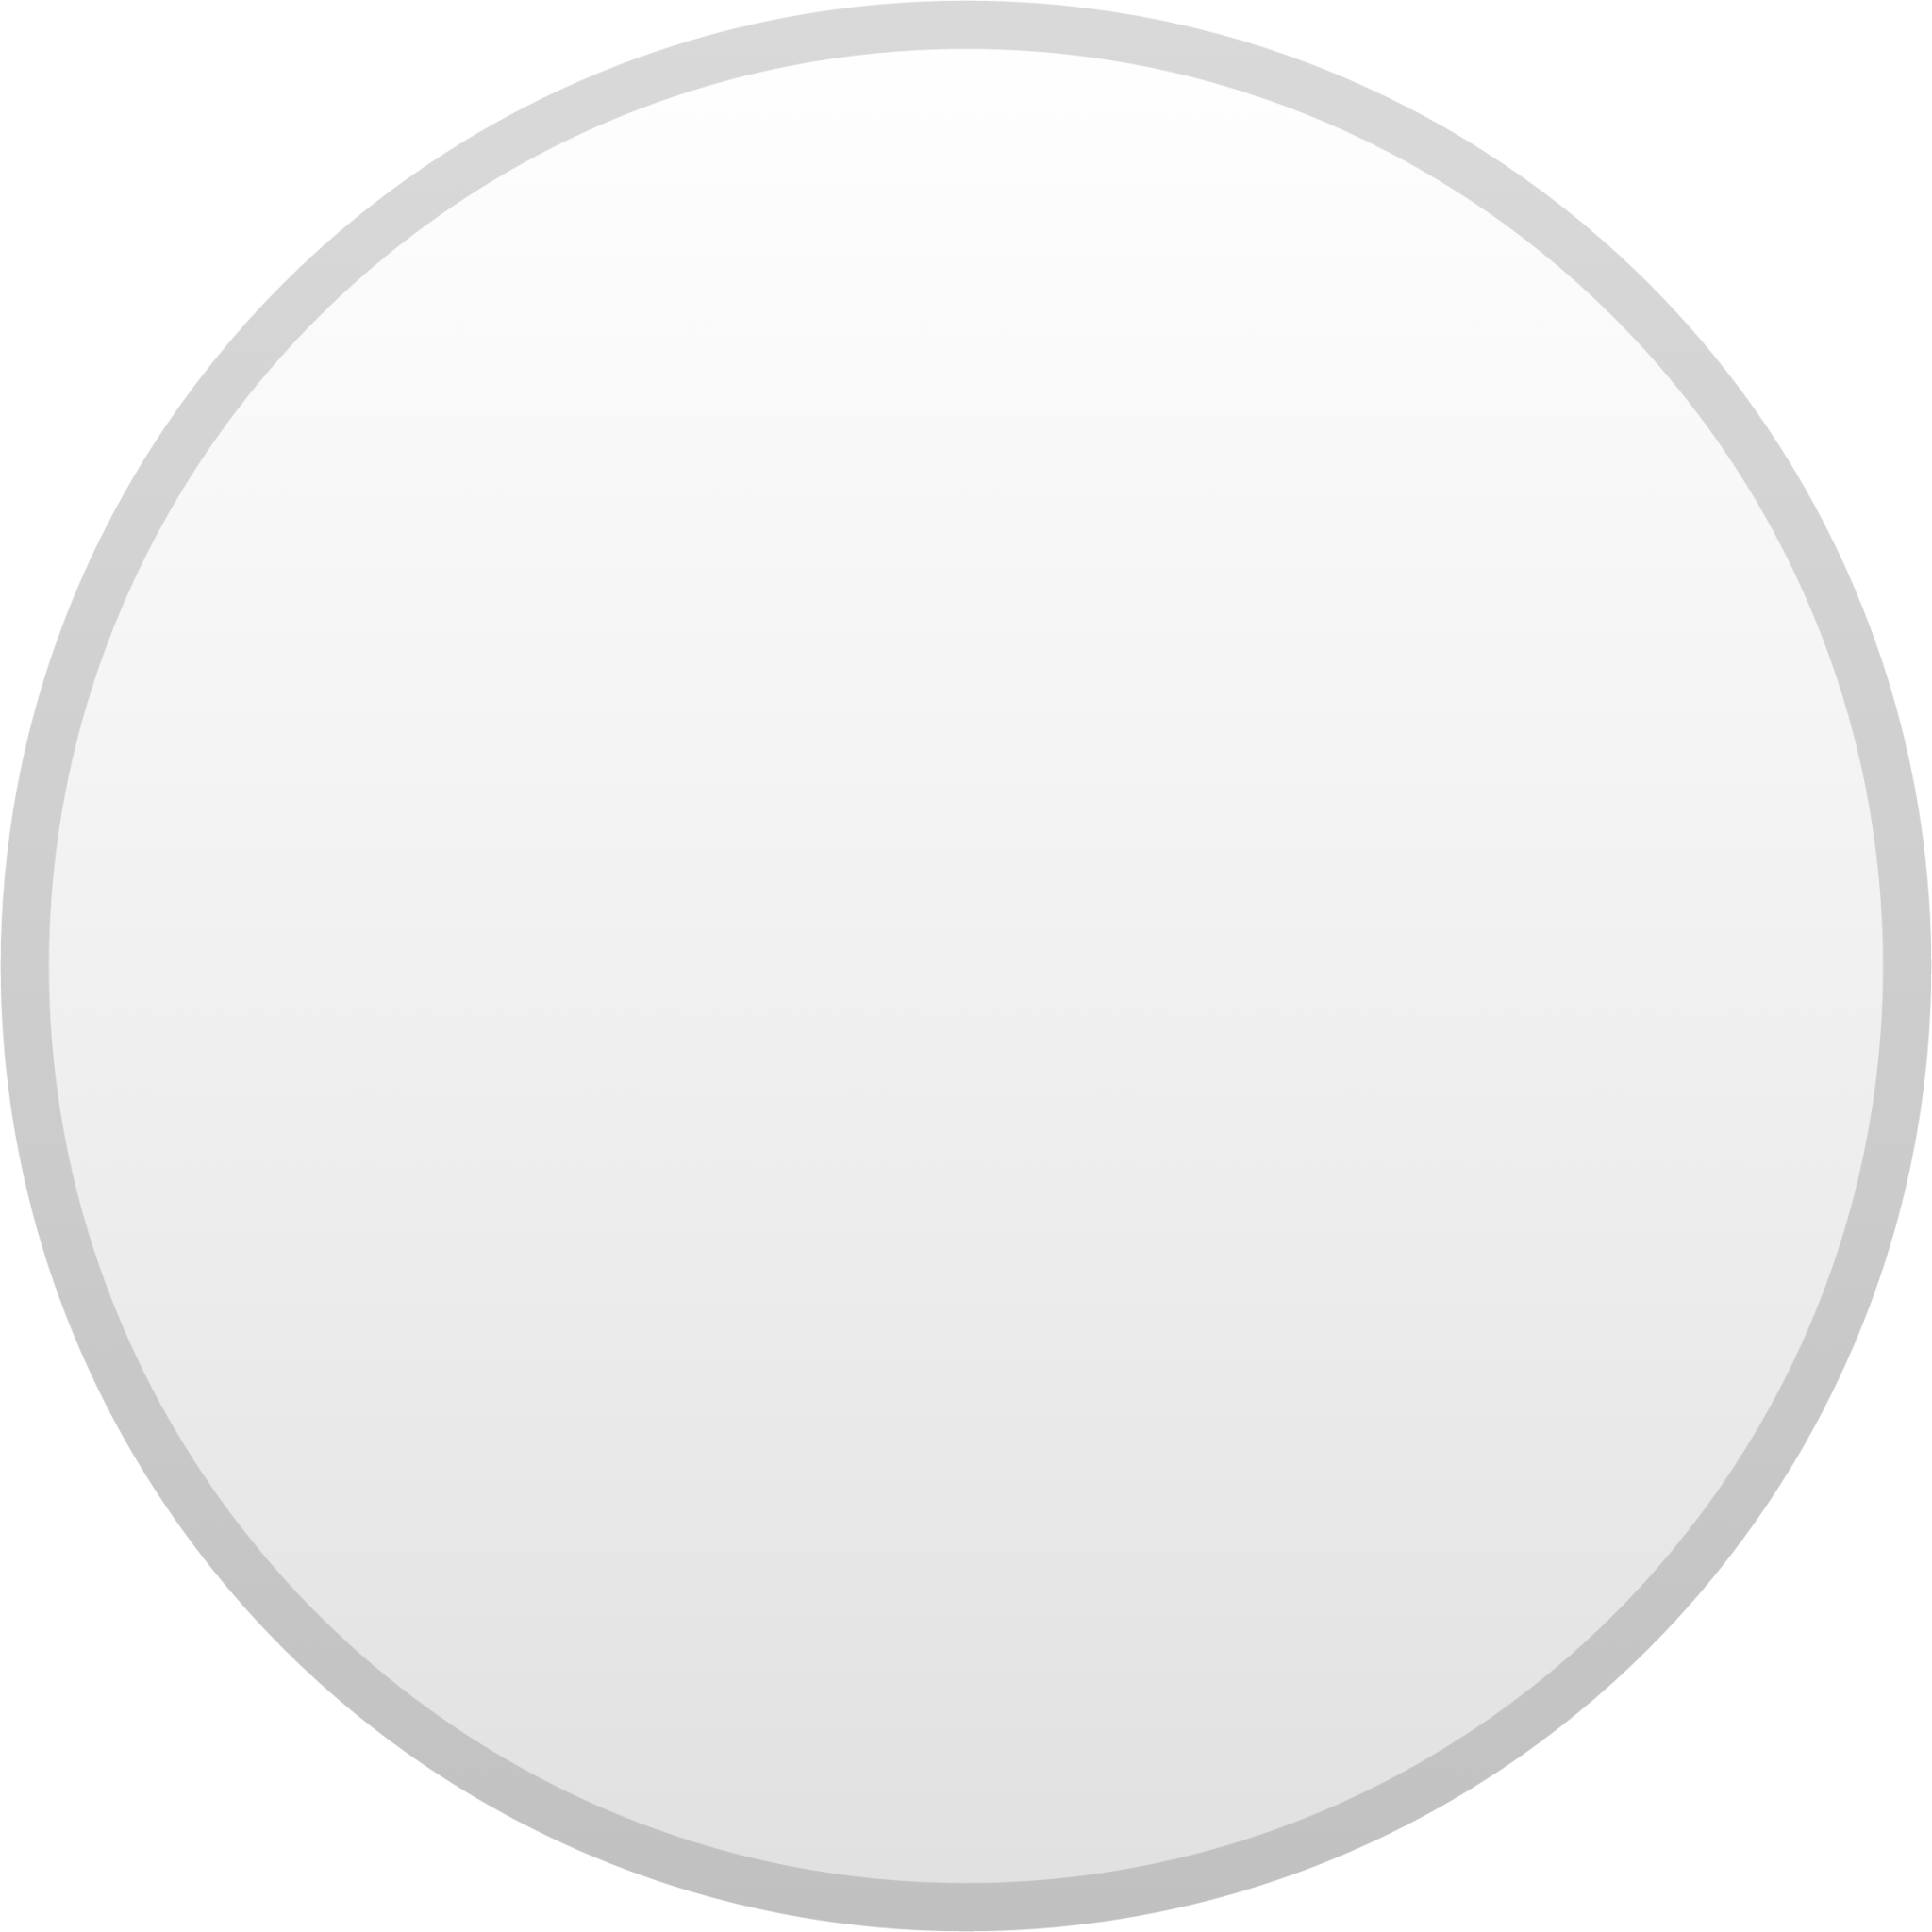 white circle emoji